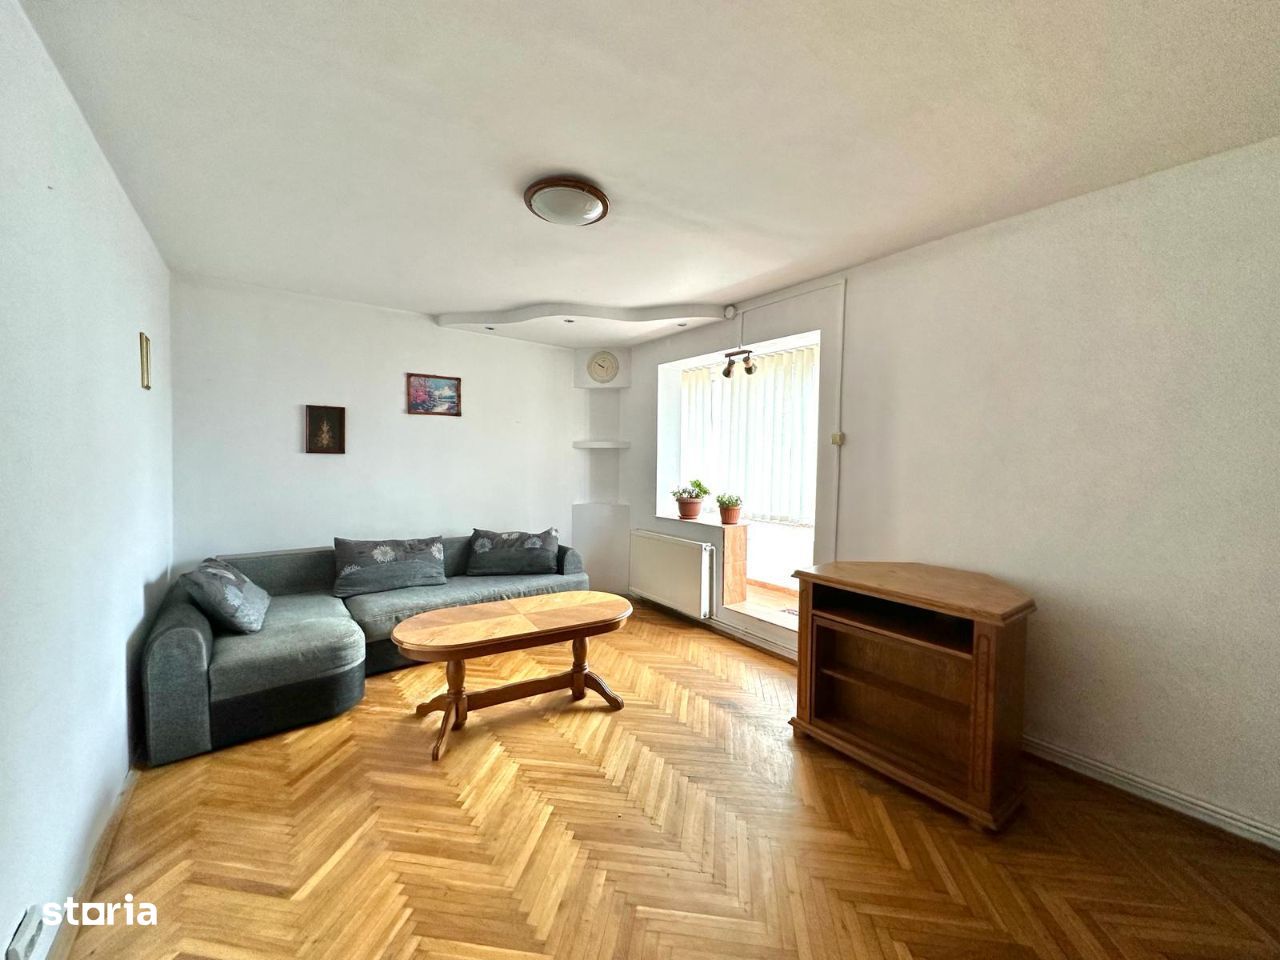 C/1454 De vânzare apartament cu 2 camere în Tg Mureș - Tudor